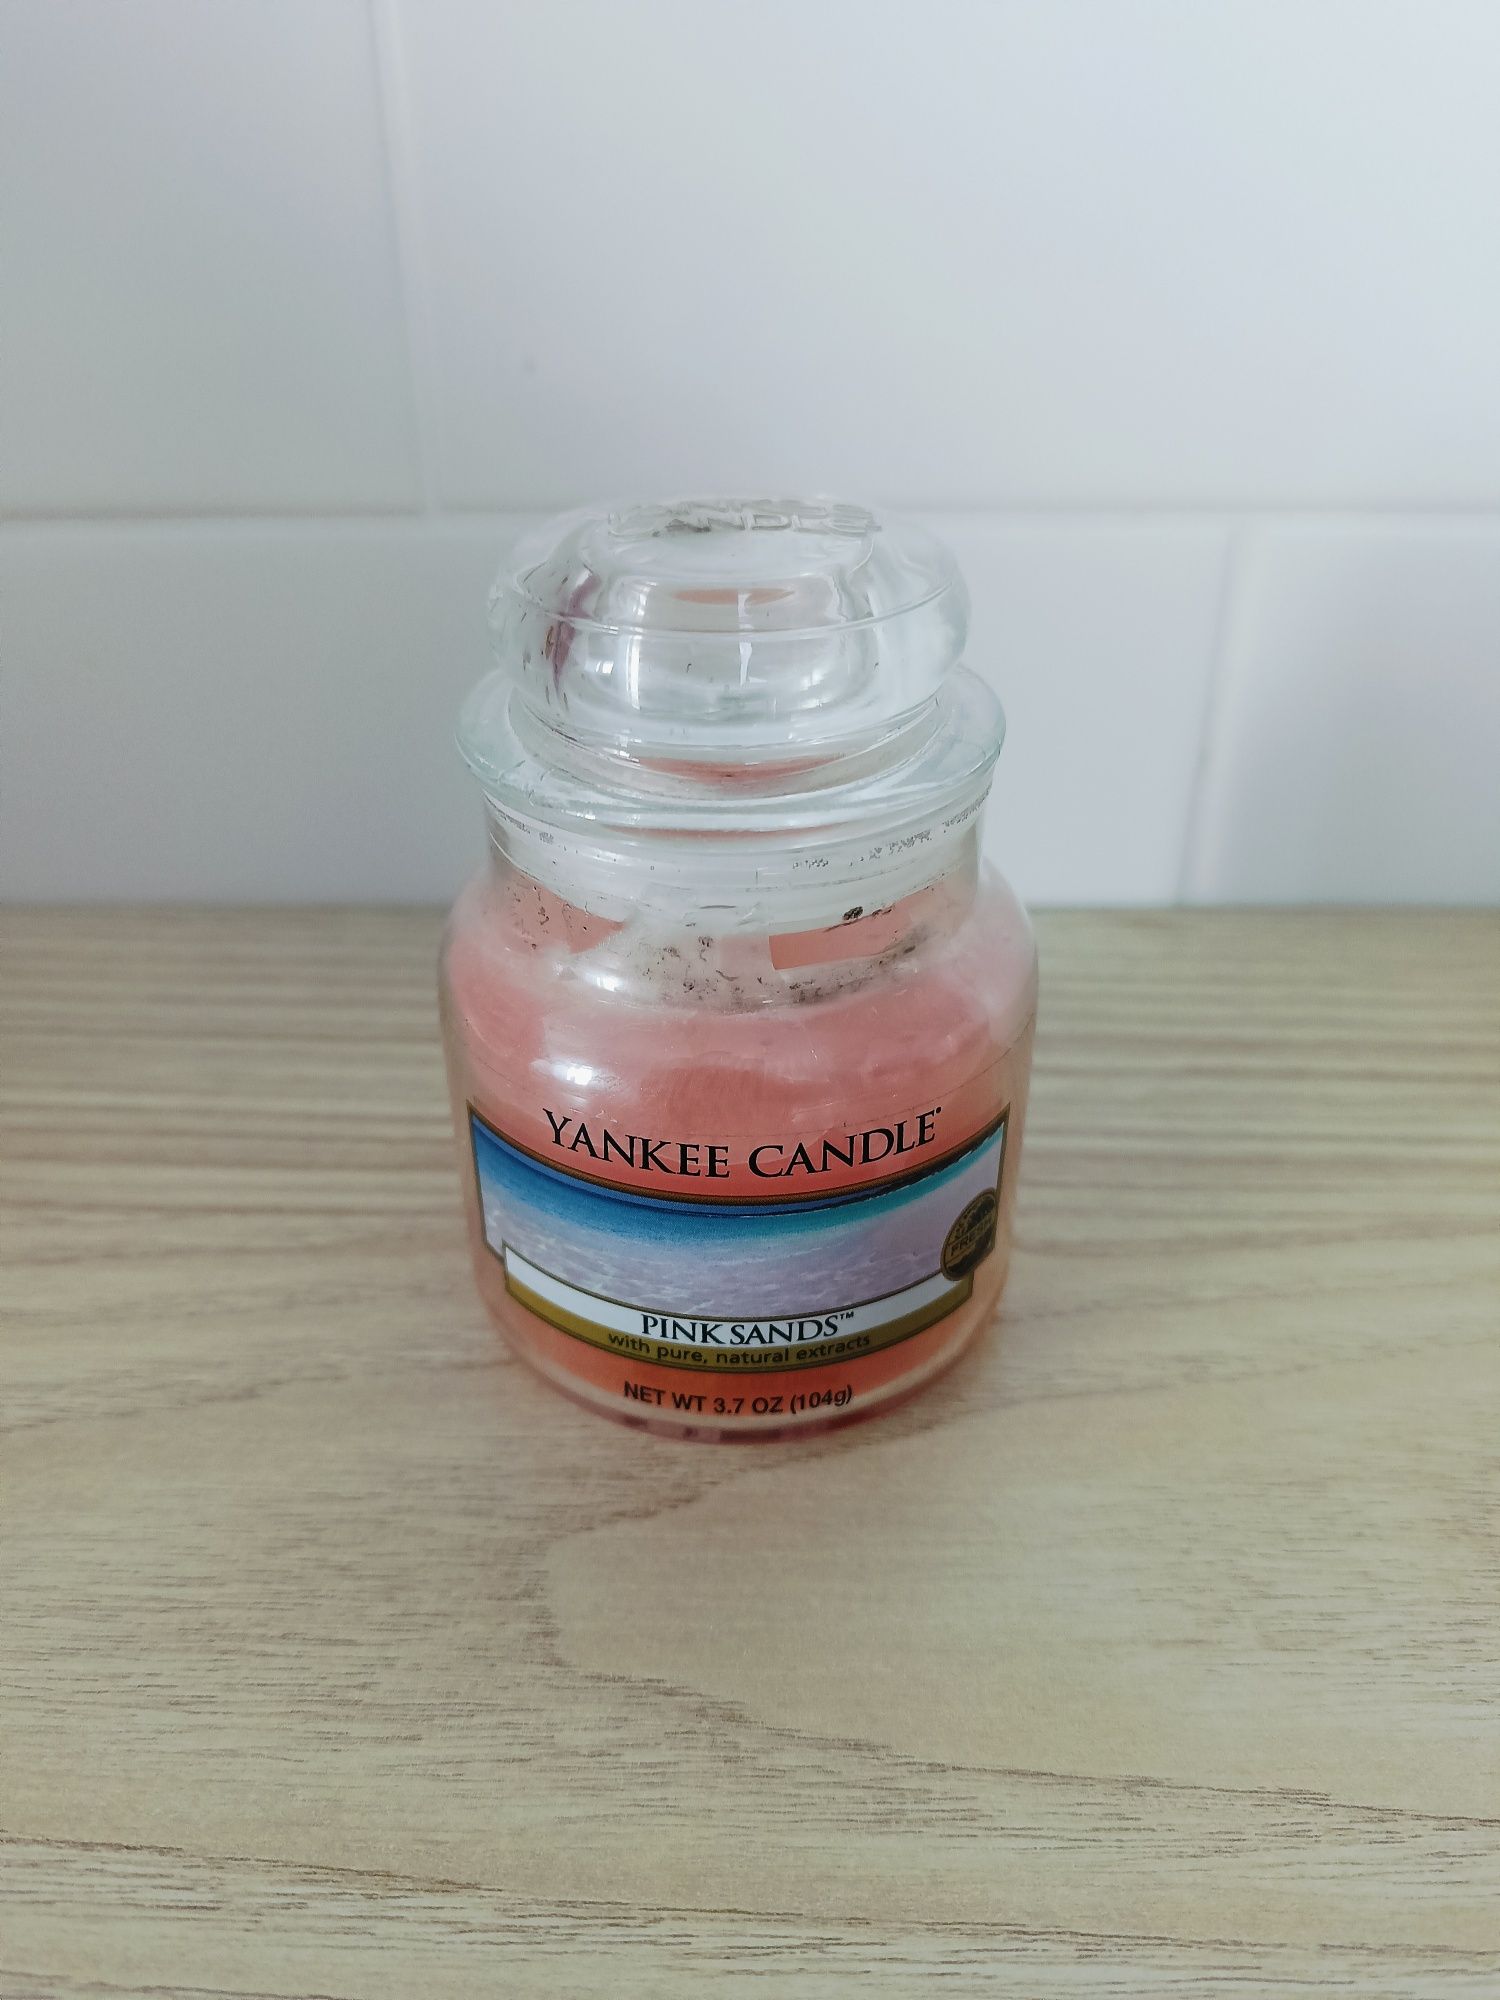 Yankee candle pink sands mały słoik 104g świeca świeczka zapachowa